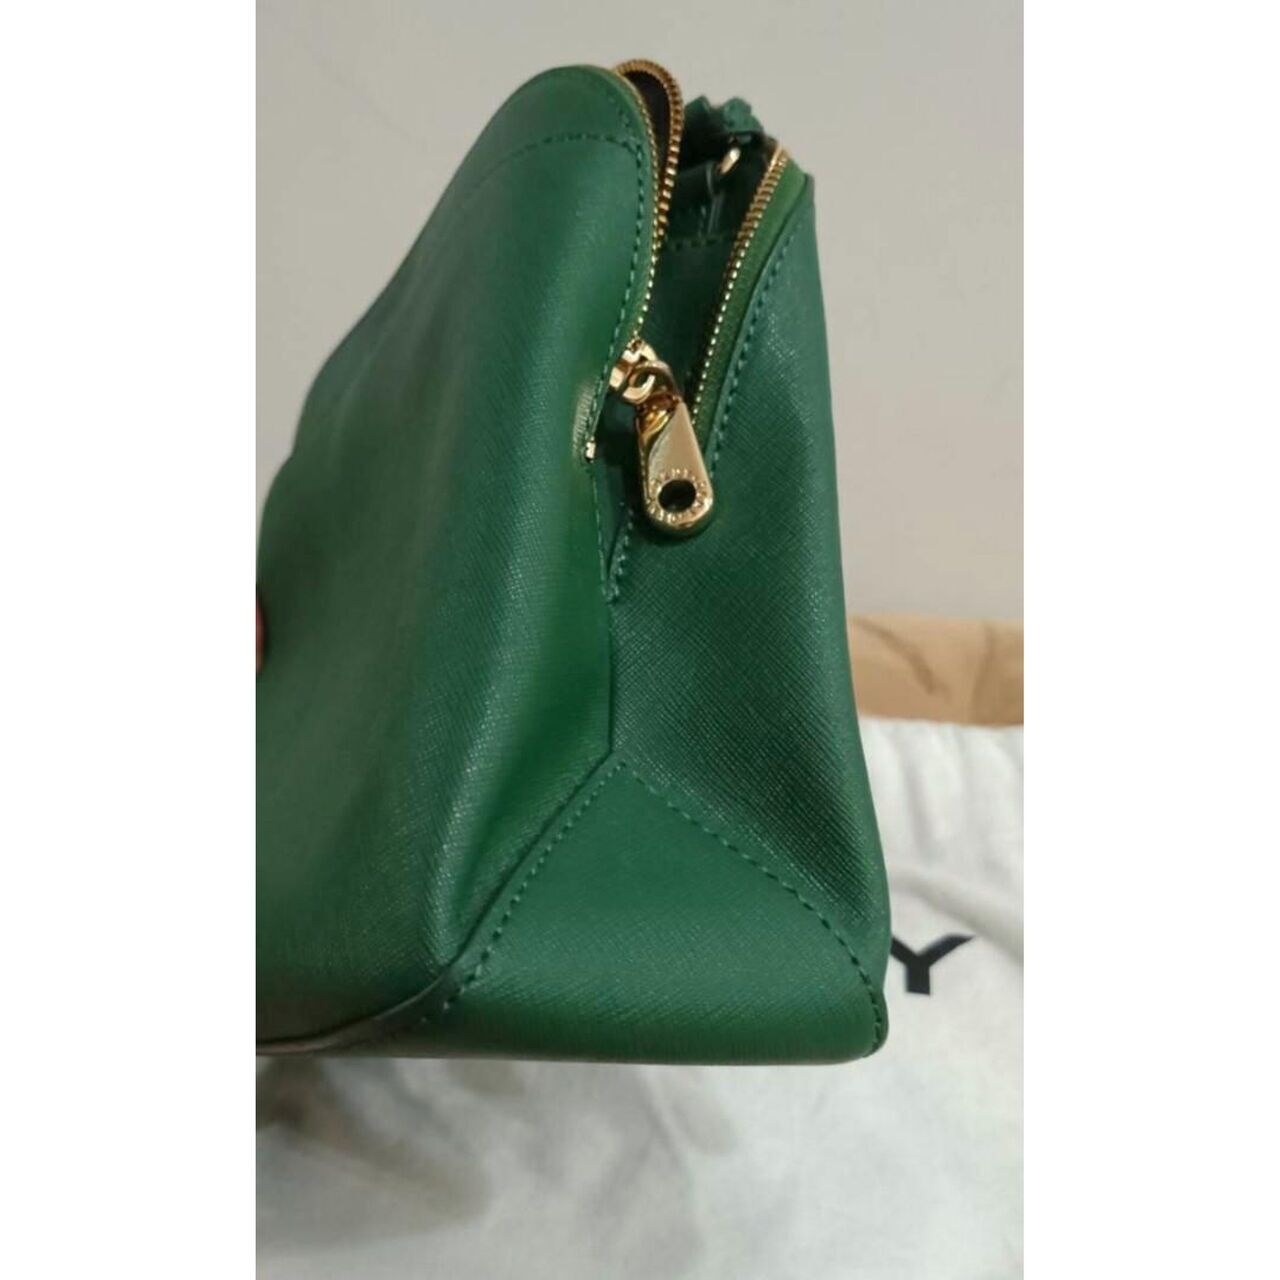 Dkny Green Sling Bag